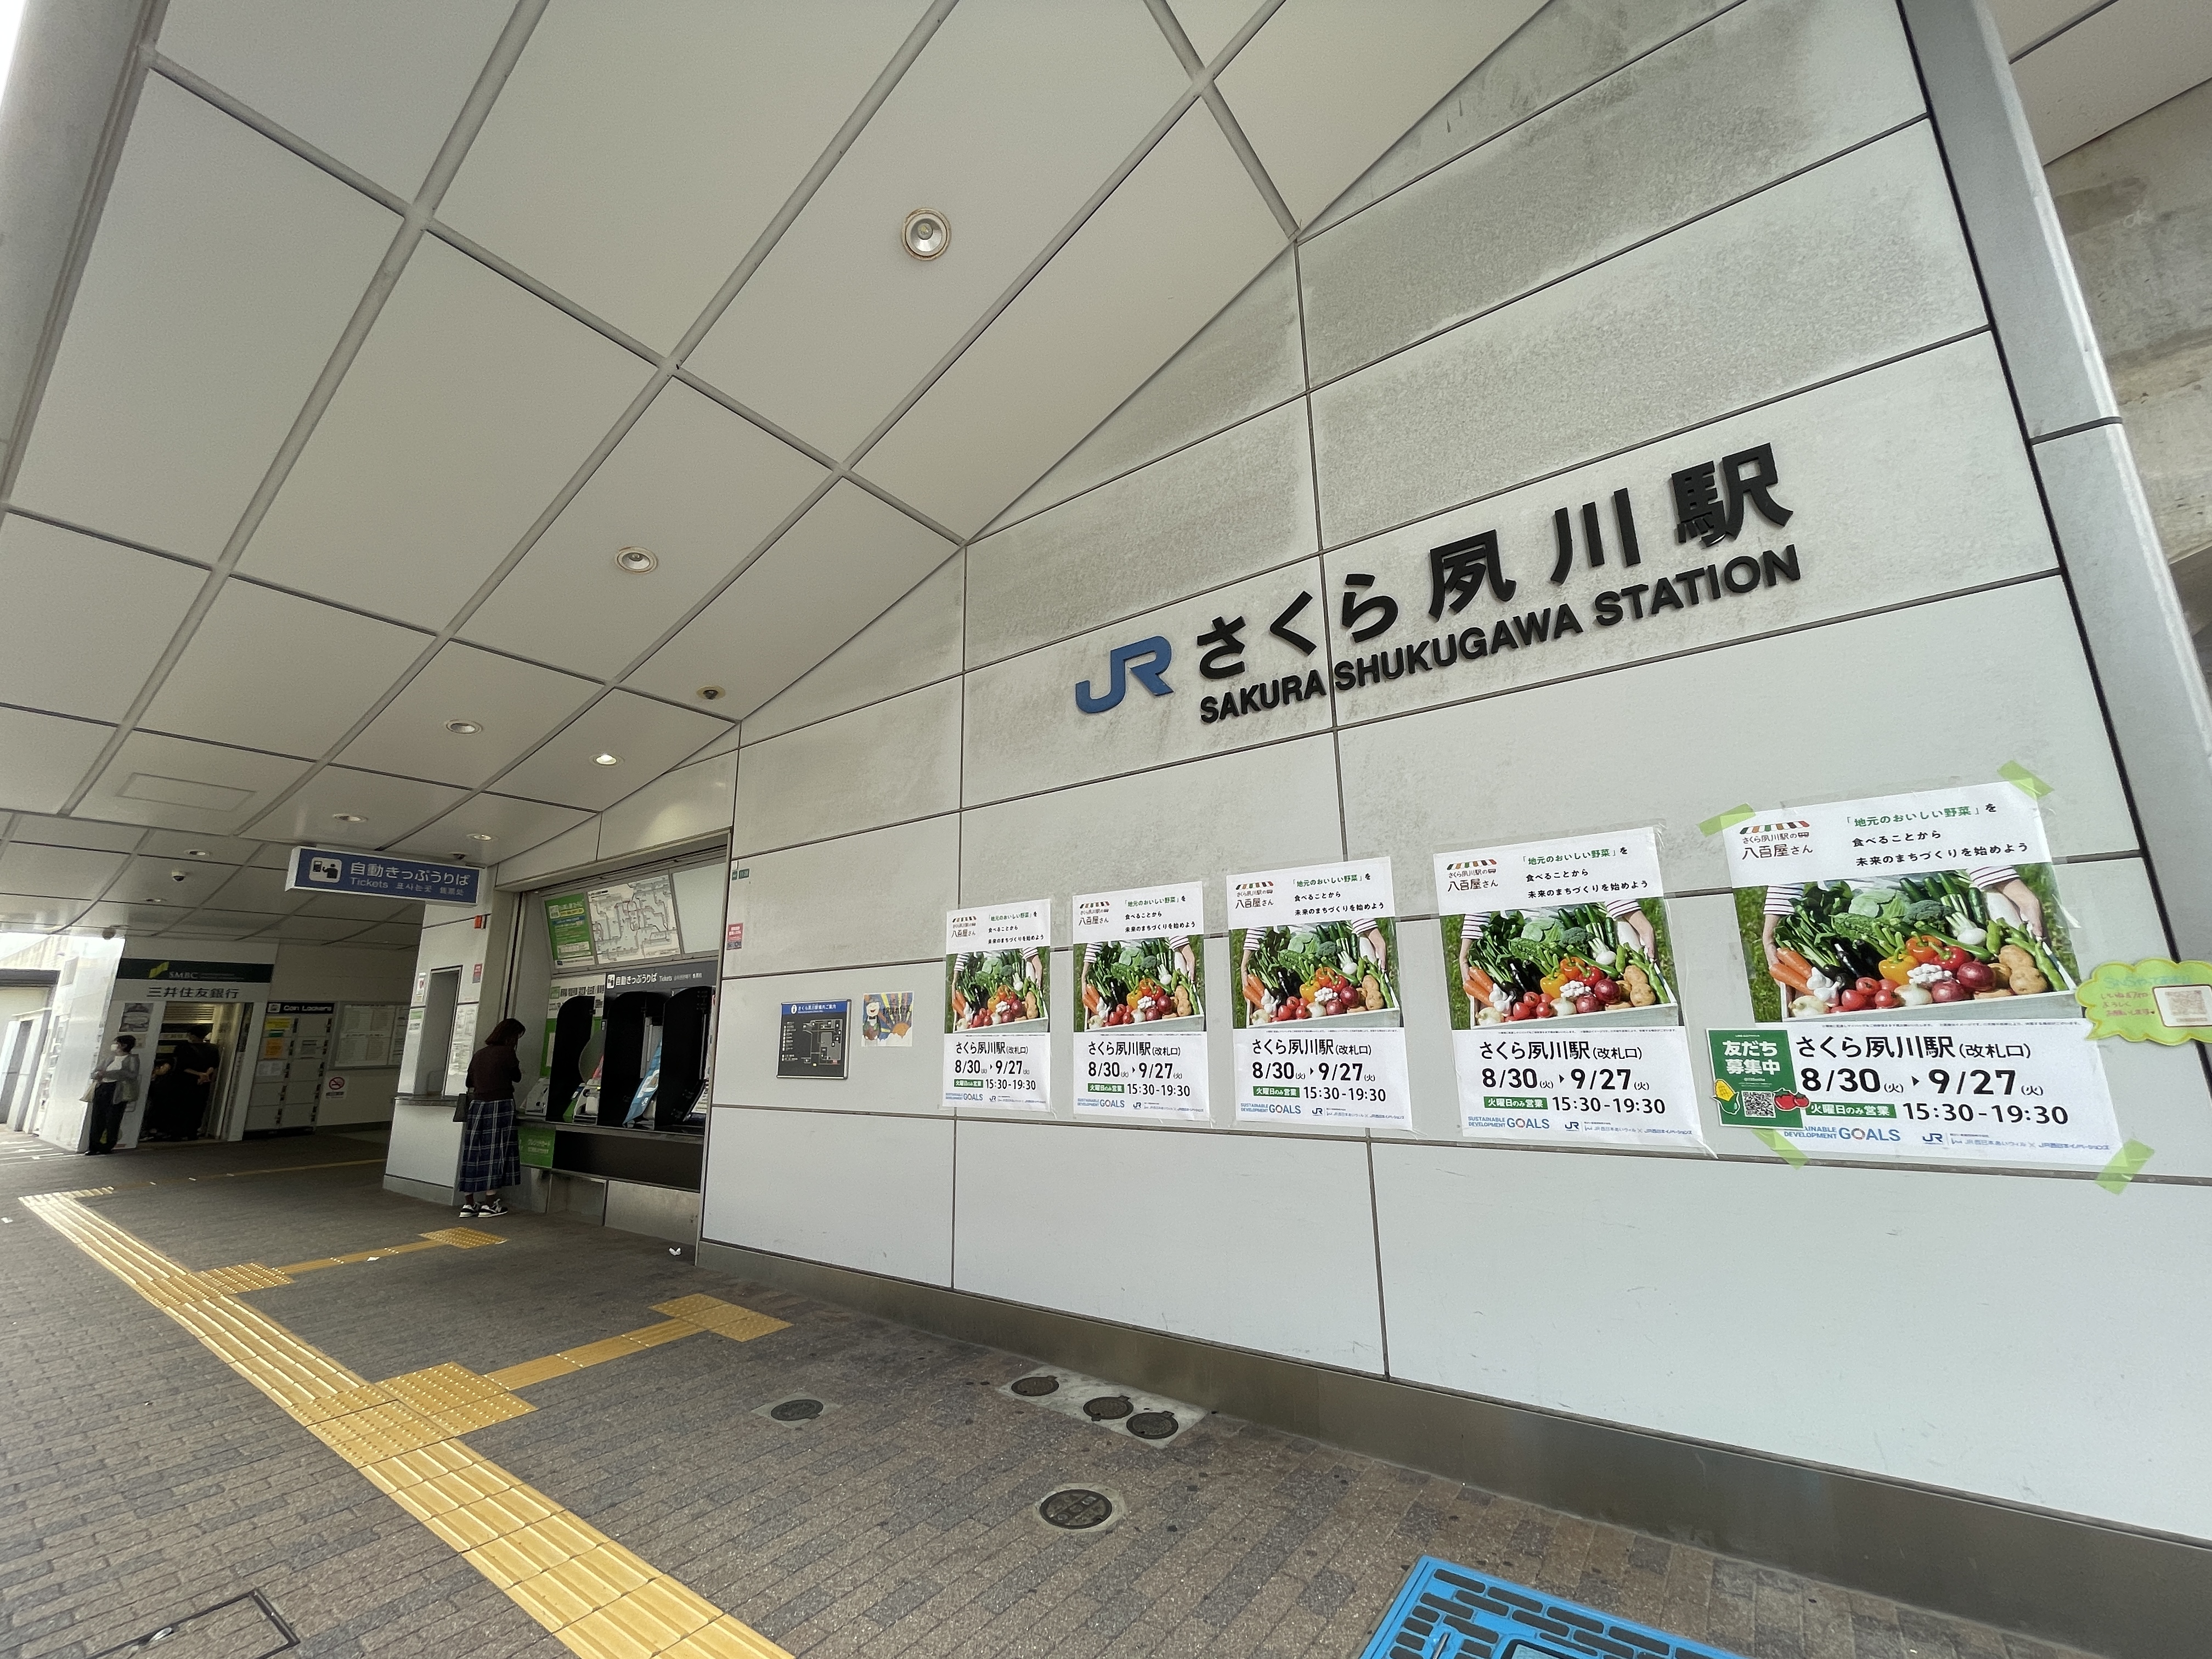 平成19年に新設開業と比較的新しい「さくら夙川」駅<br />
阪急・阪神エリアと元々人気エリアだったのが、<br />
より便利な地域となりました♪